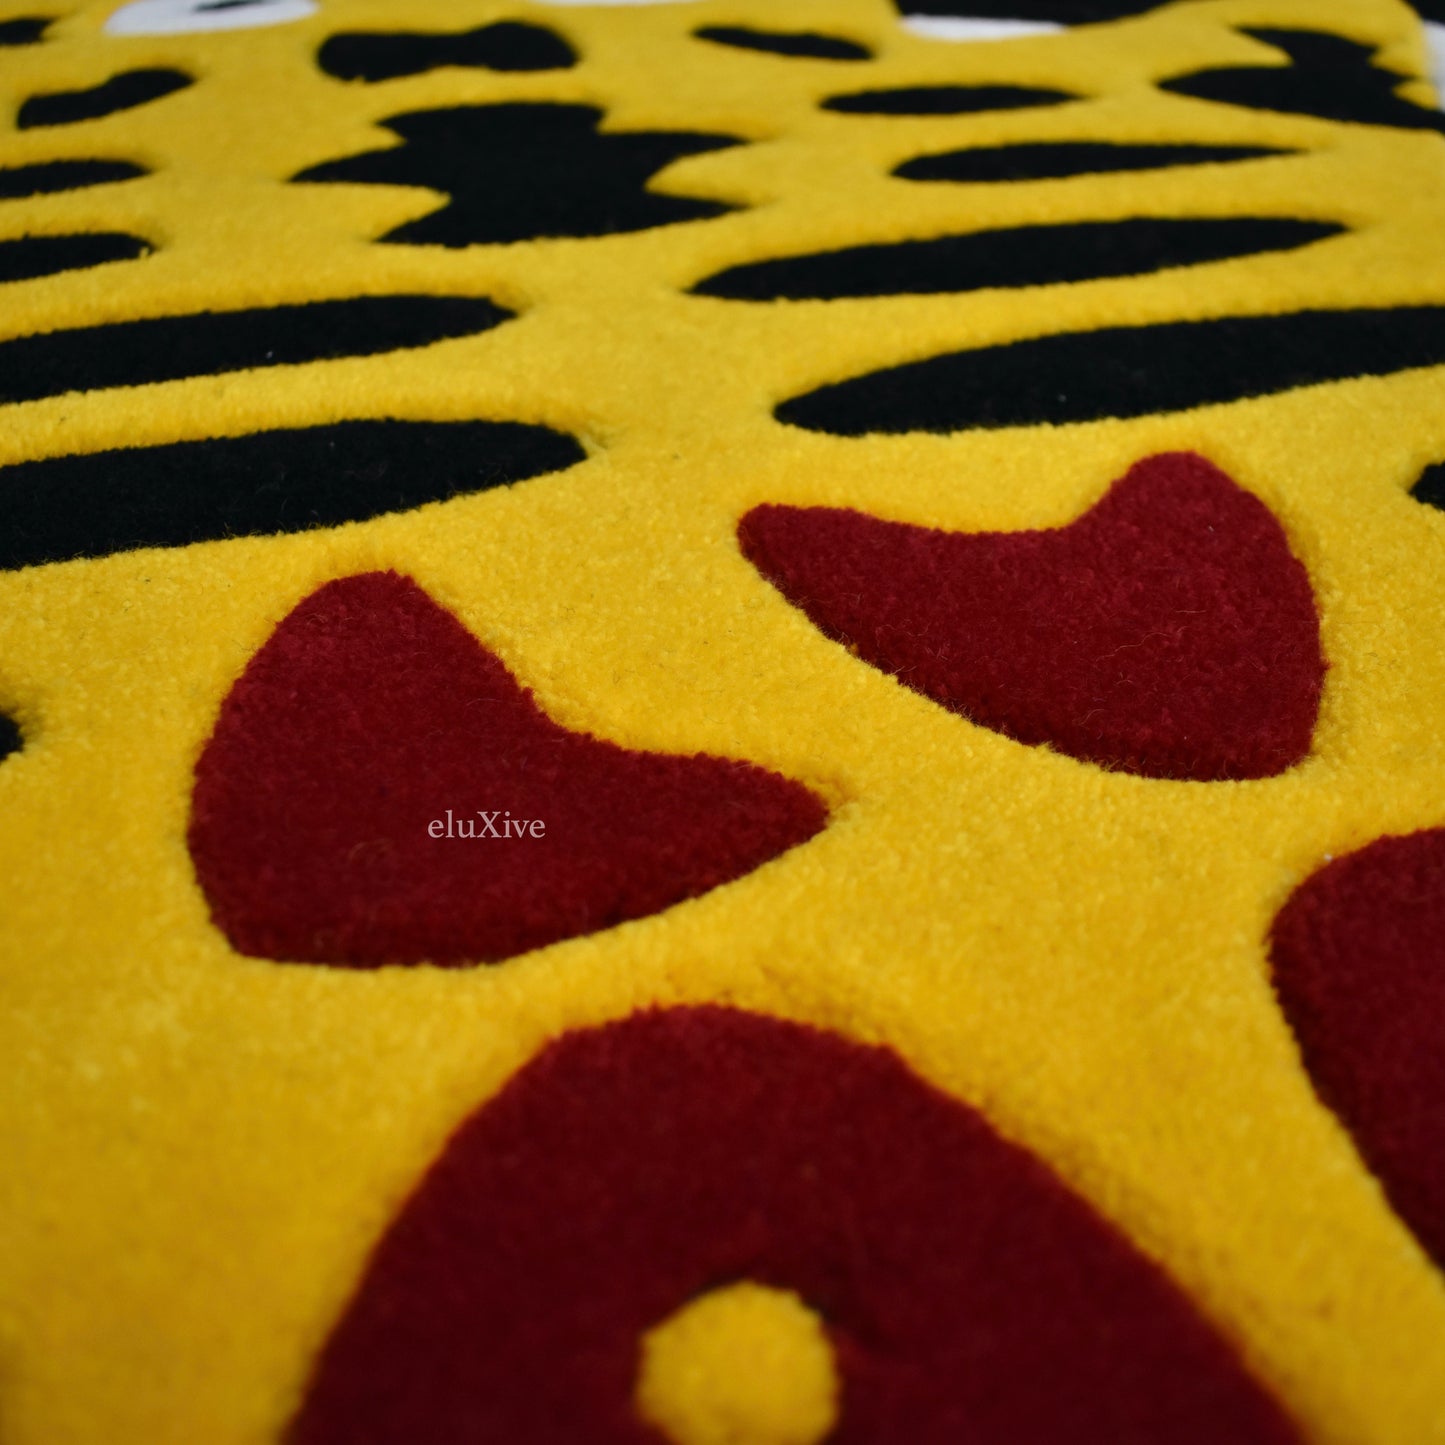 Louis Vuitton x Nigo Tiger Carpet